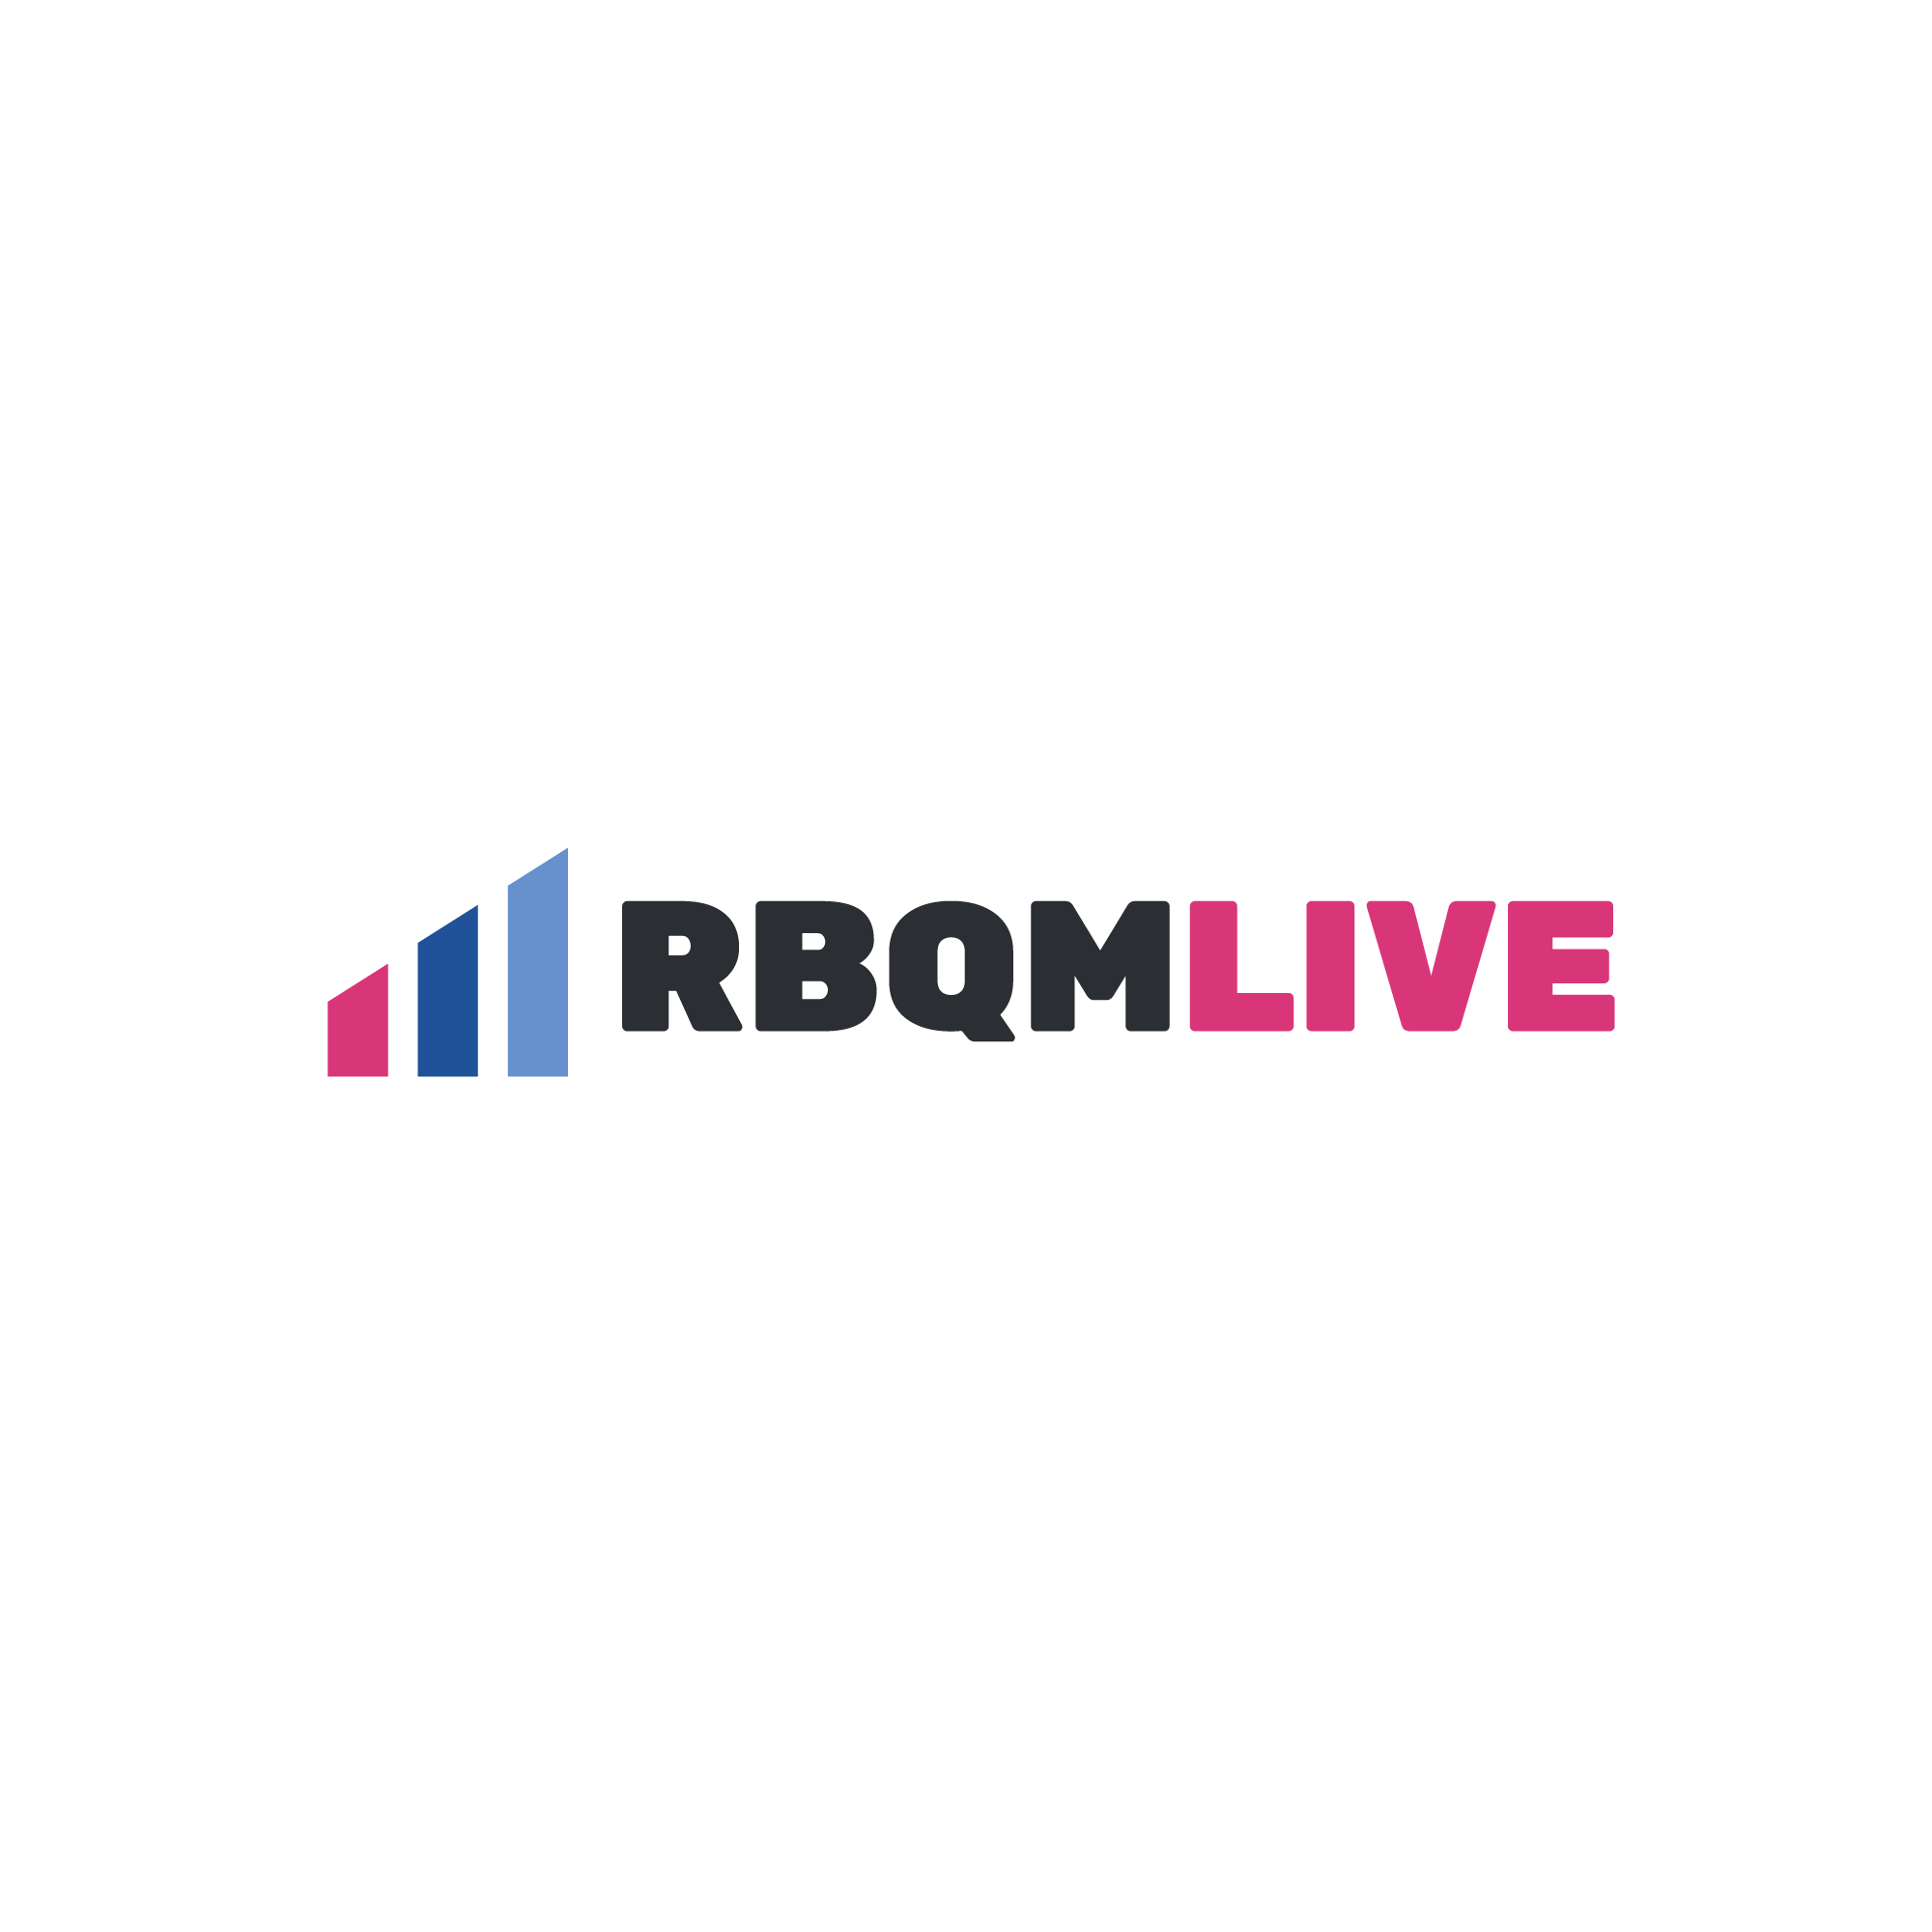 RBQM Live